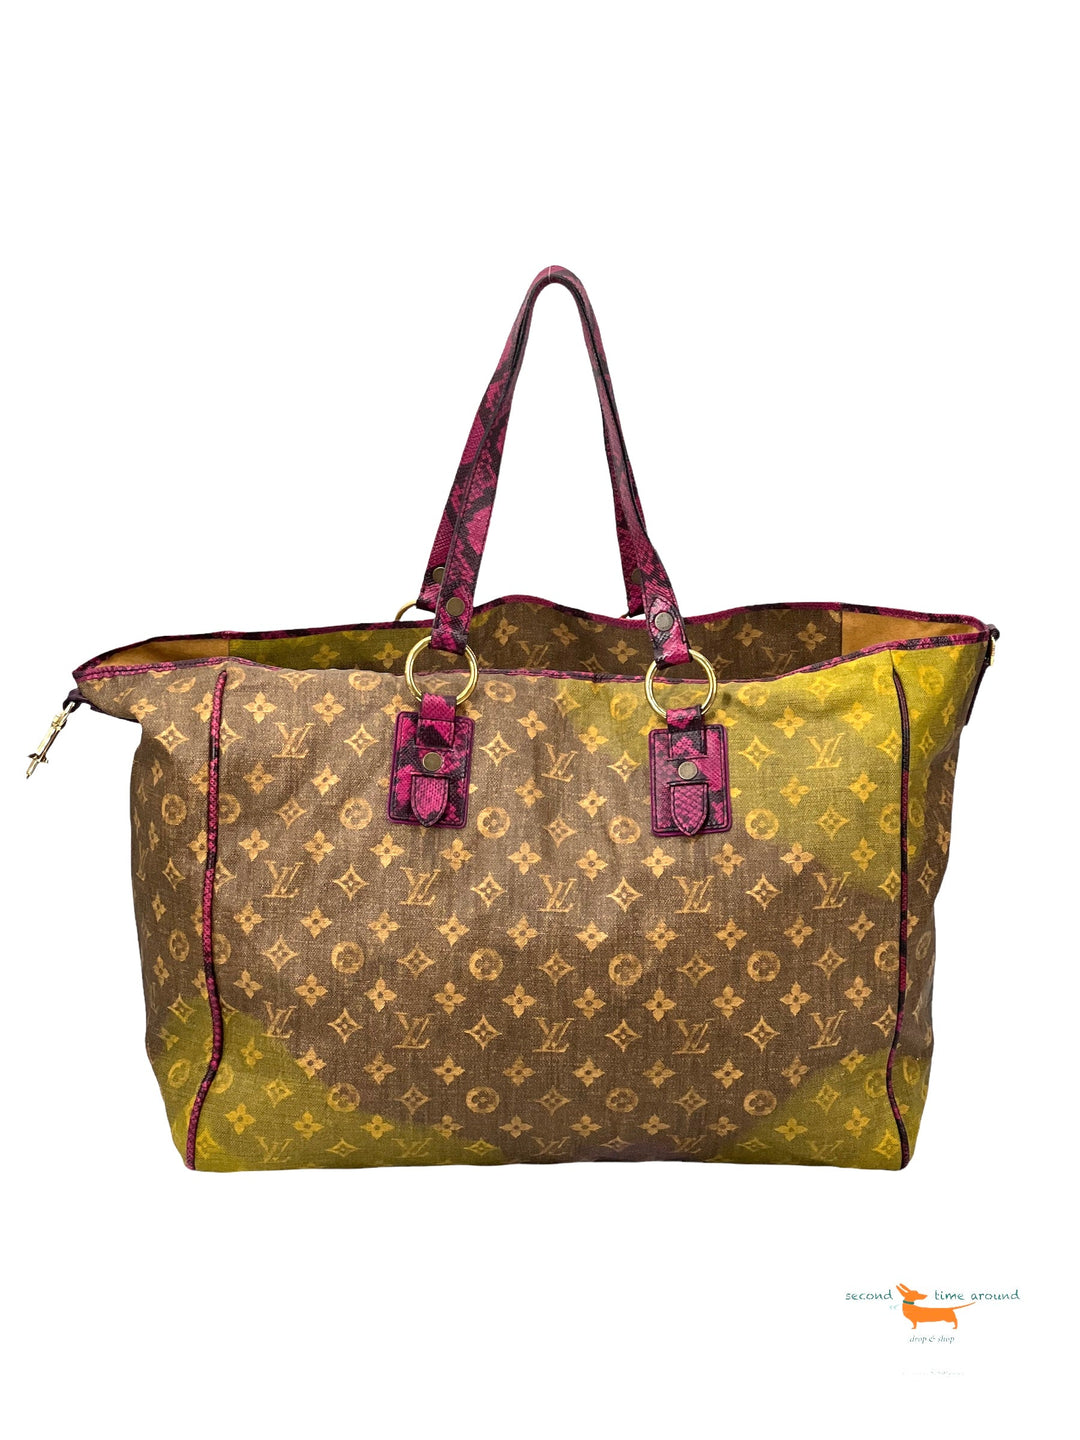 Louis Vuitton Richard Prince Limited Edition 50 cm Bag